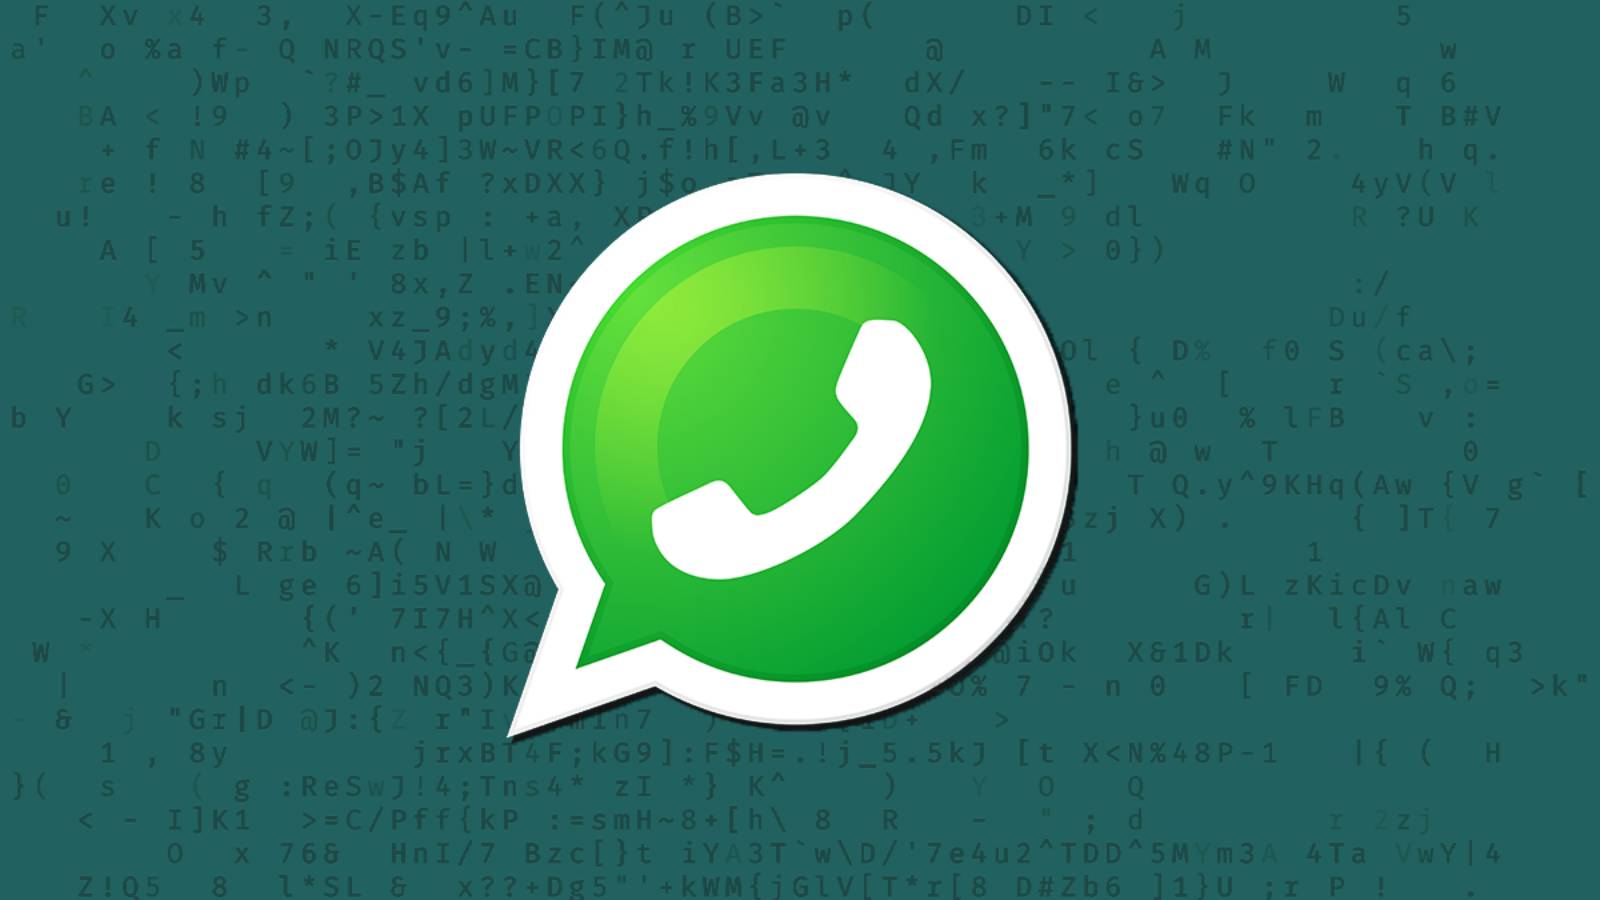 OFFIZIELLE WhatsApp-Benachrichtigung MILLIONEN von Menschen